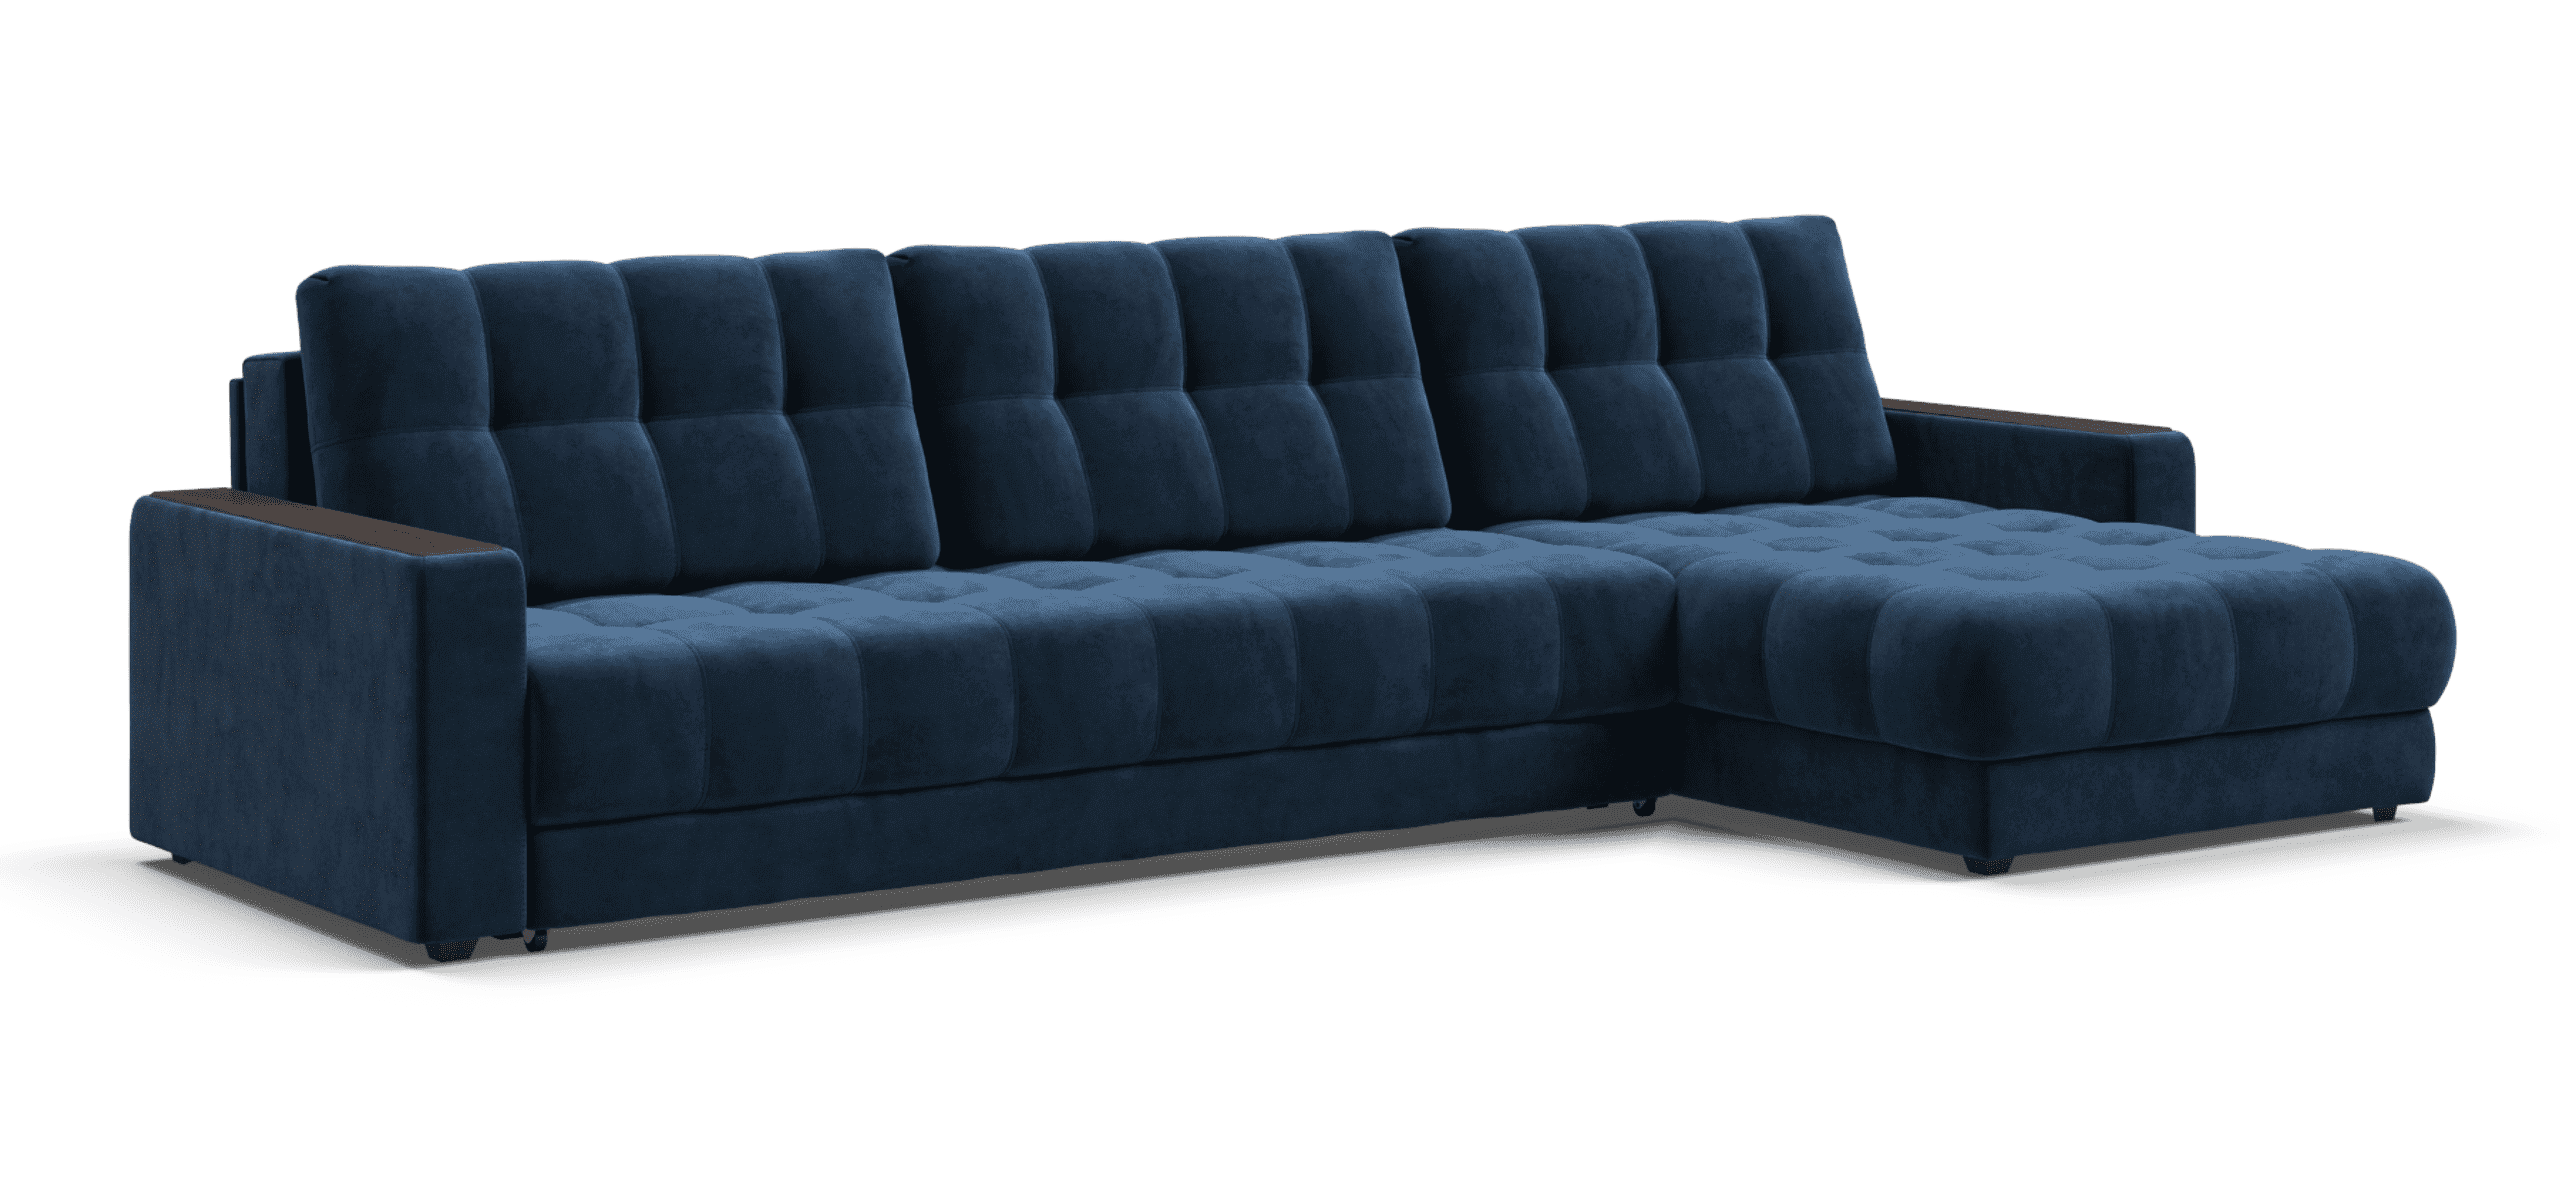 Большой семейный угловой диван boss max se ткань велюр, цвет синий, 338х183х90 см